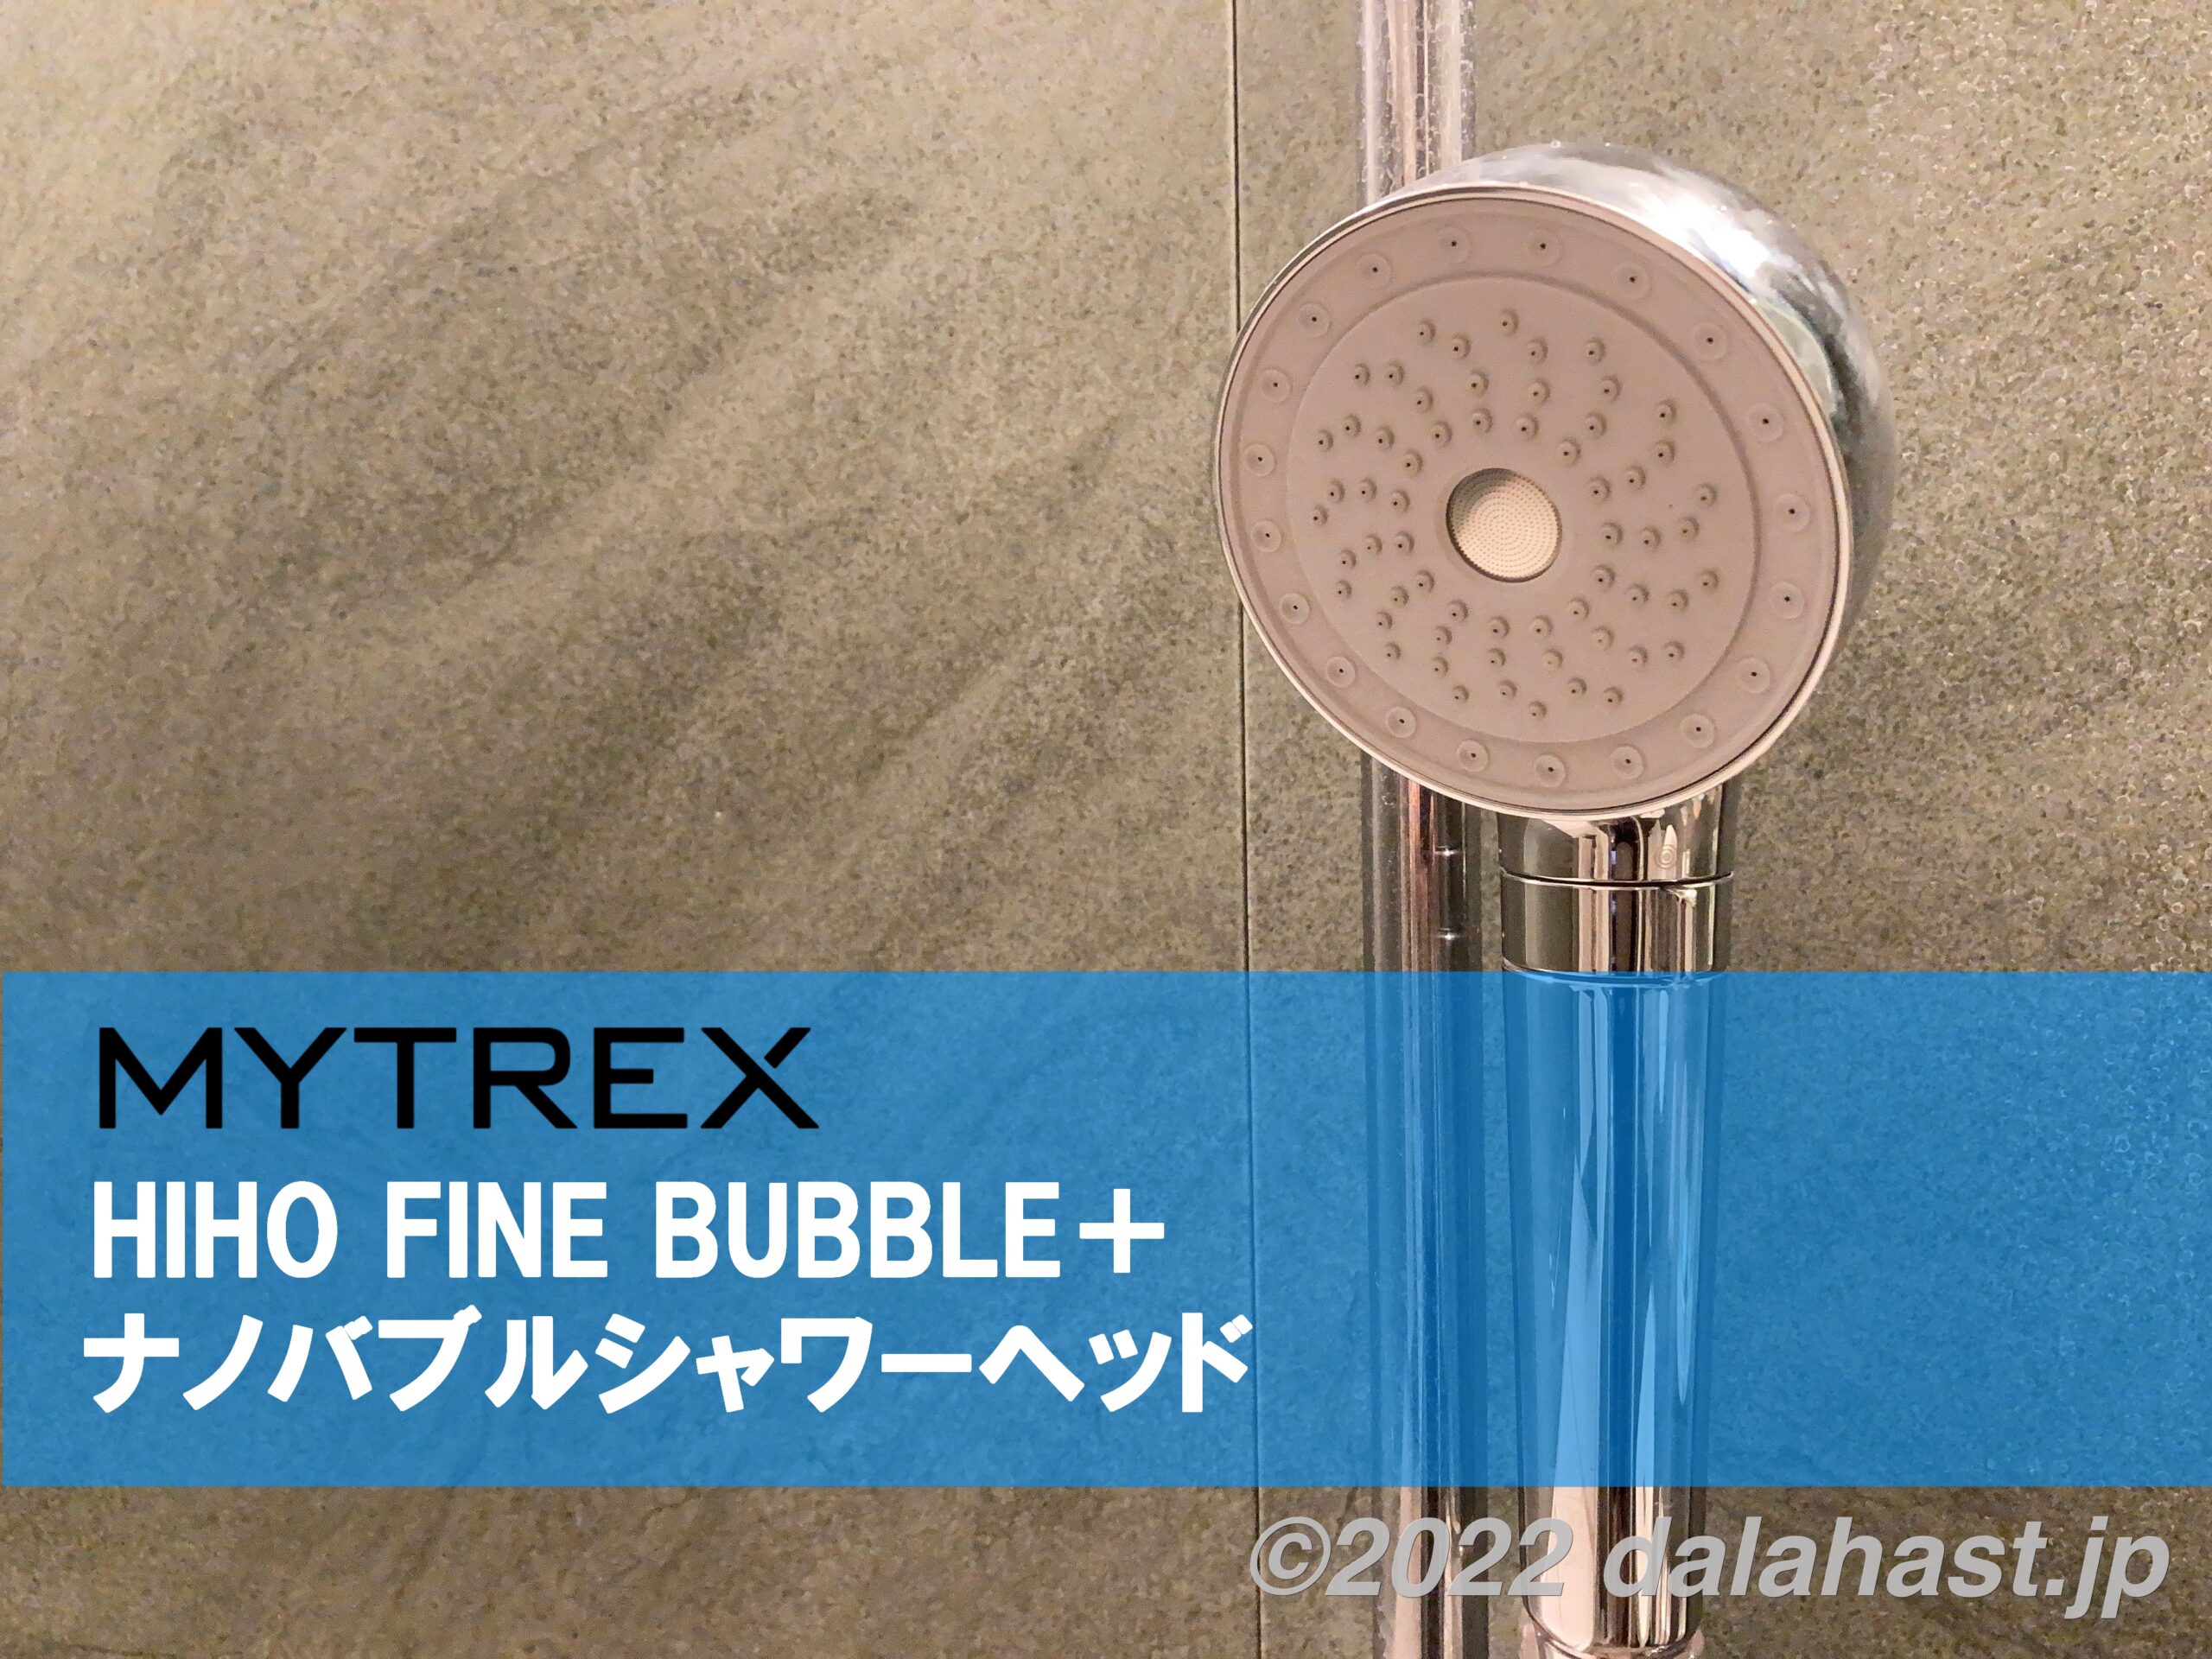 [B!] 【MYTREX HIHO FINE BUBBLE+ レビュー】ナノバブル入りの温かいミストがでるシャワーヘッドでバスタイムが快適になった話